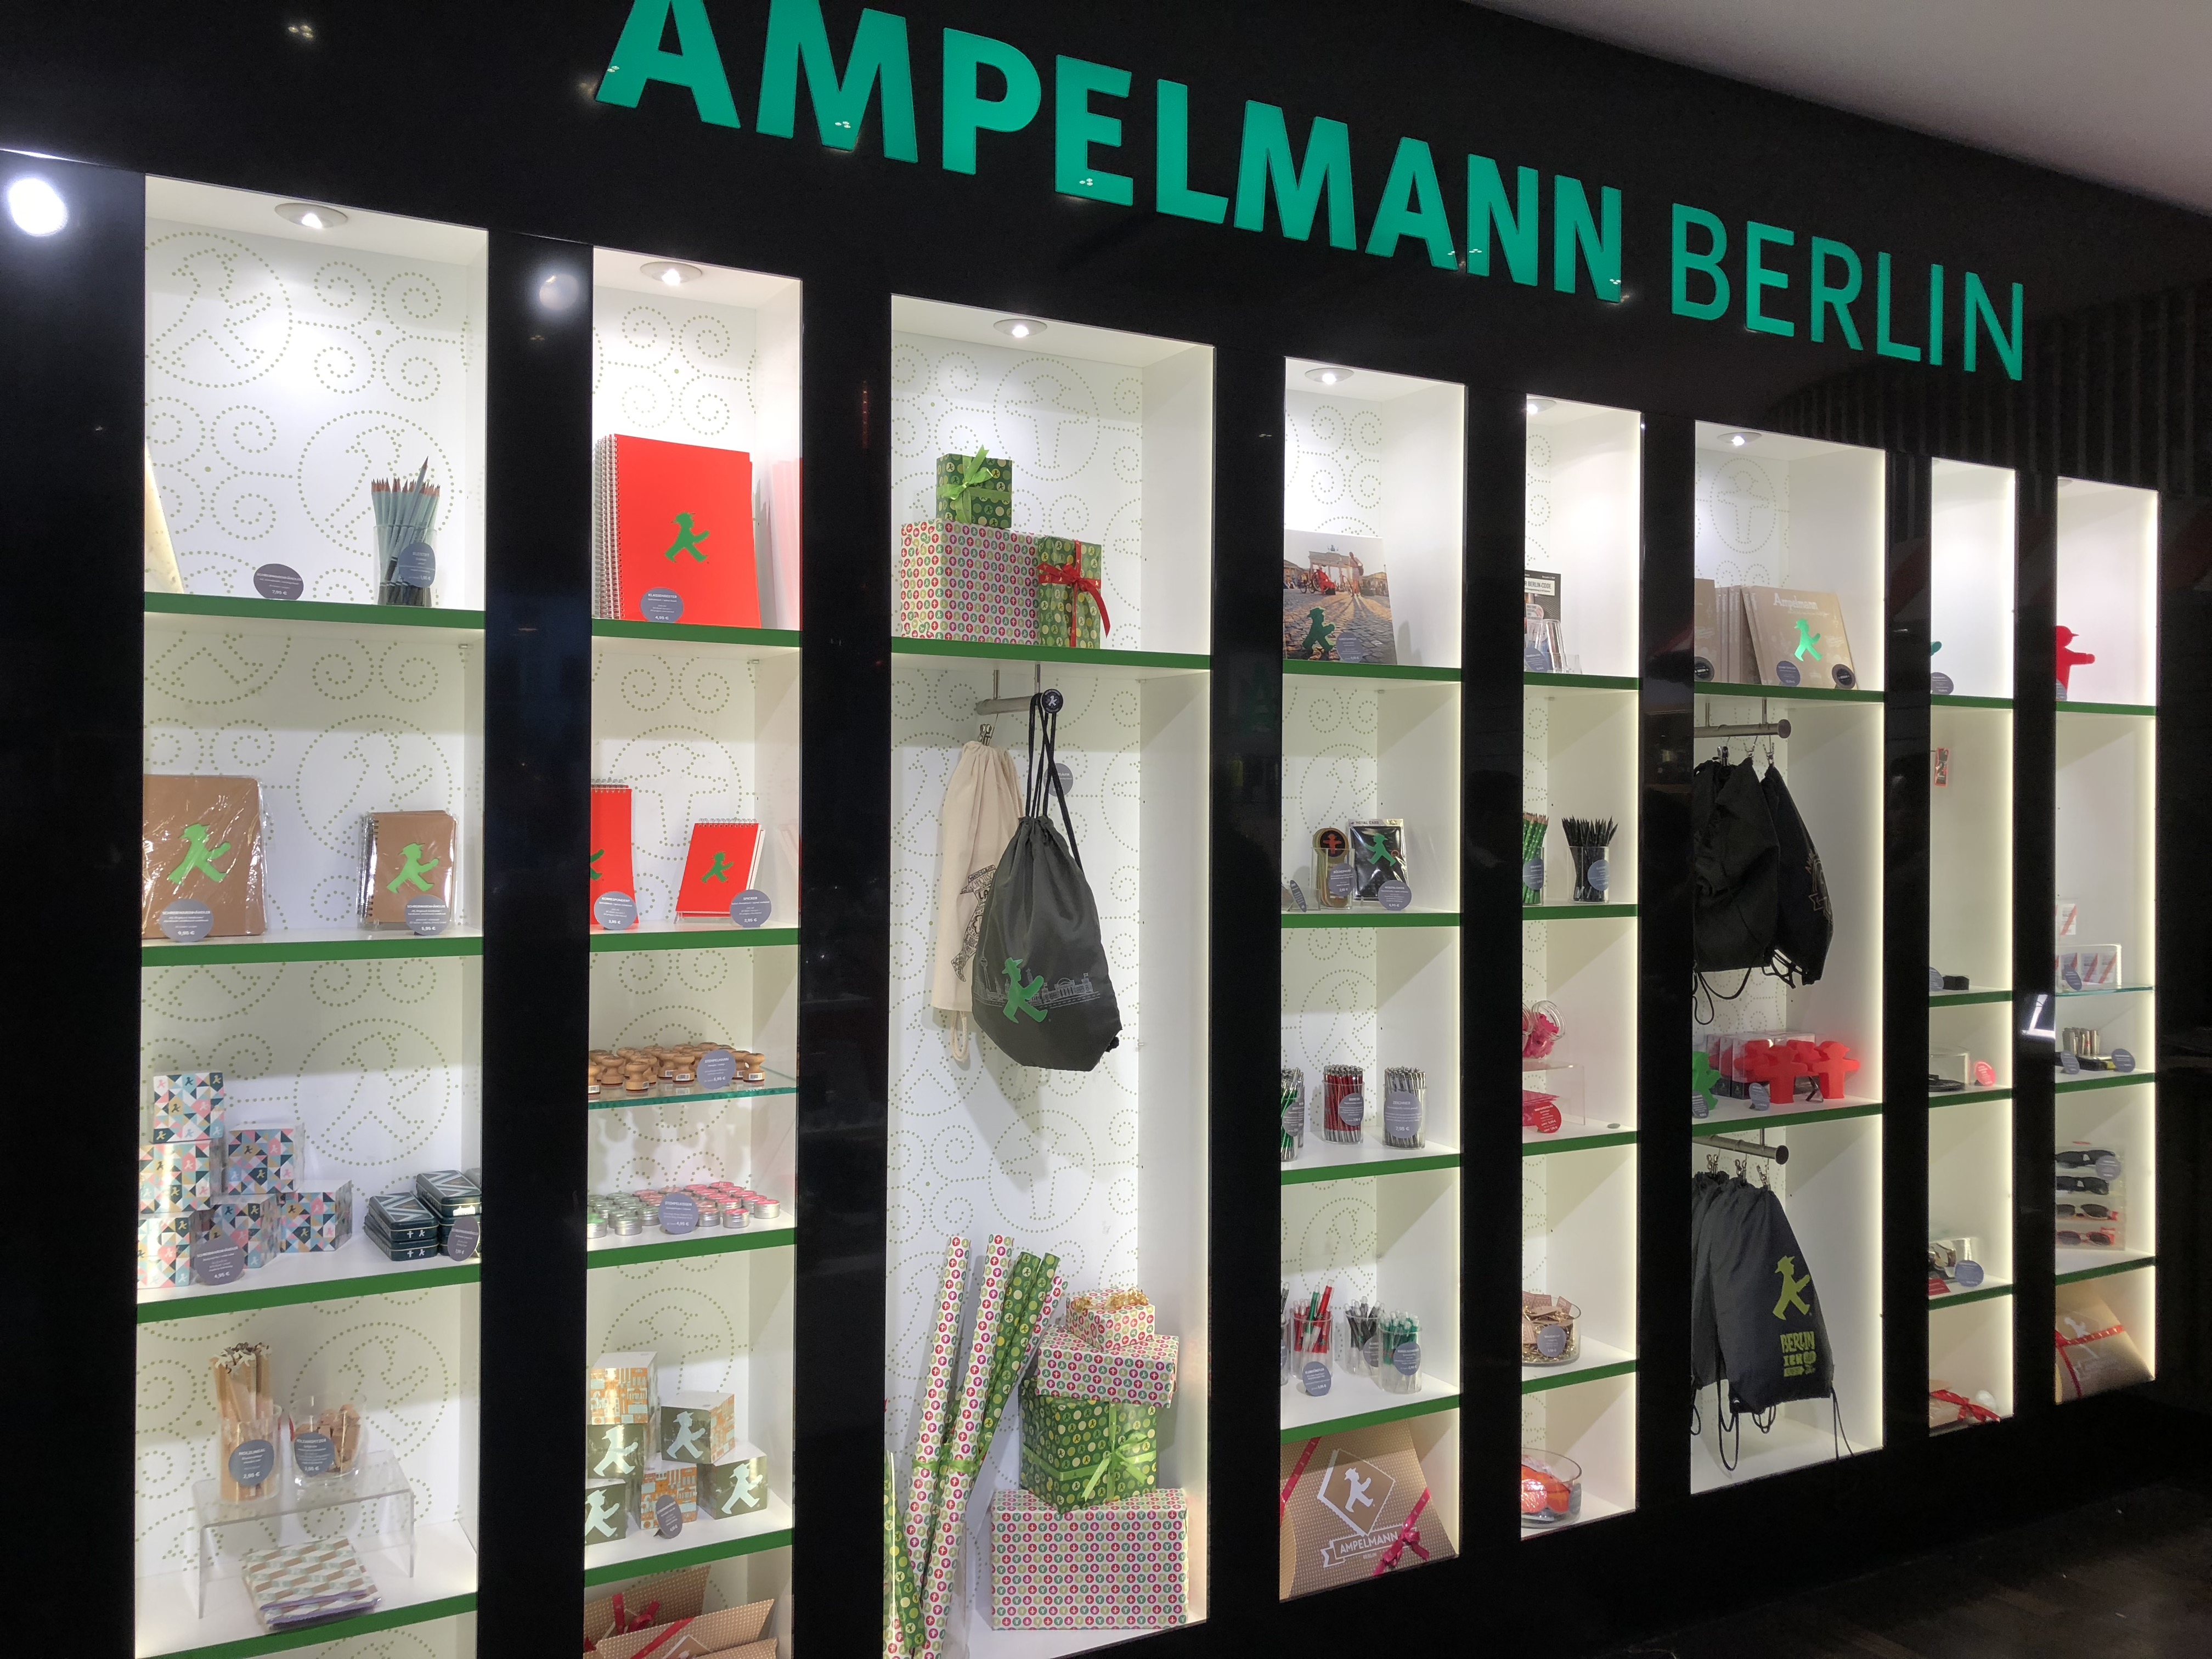 Ampelmann, Berlin, Germany